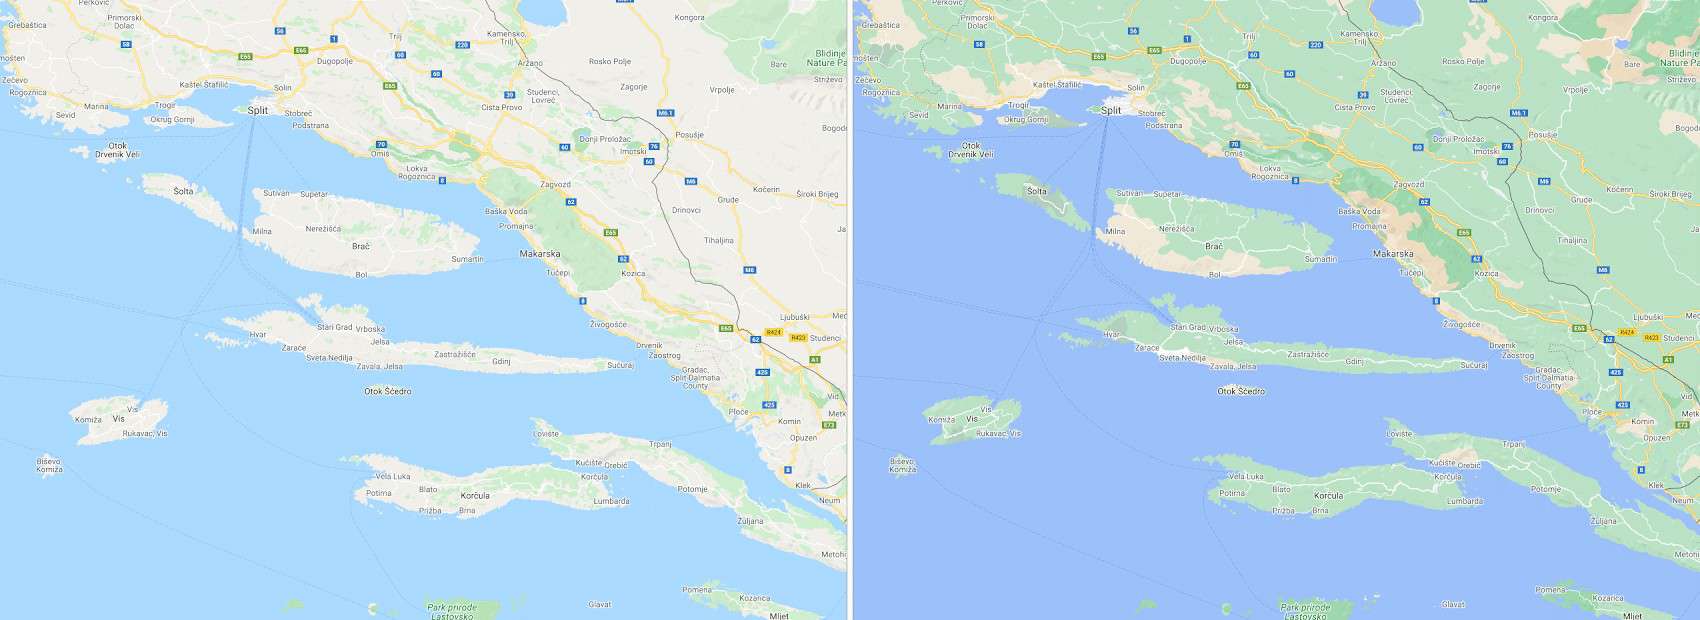 Google Maps disponibiliza melhorias visuais